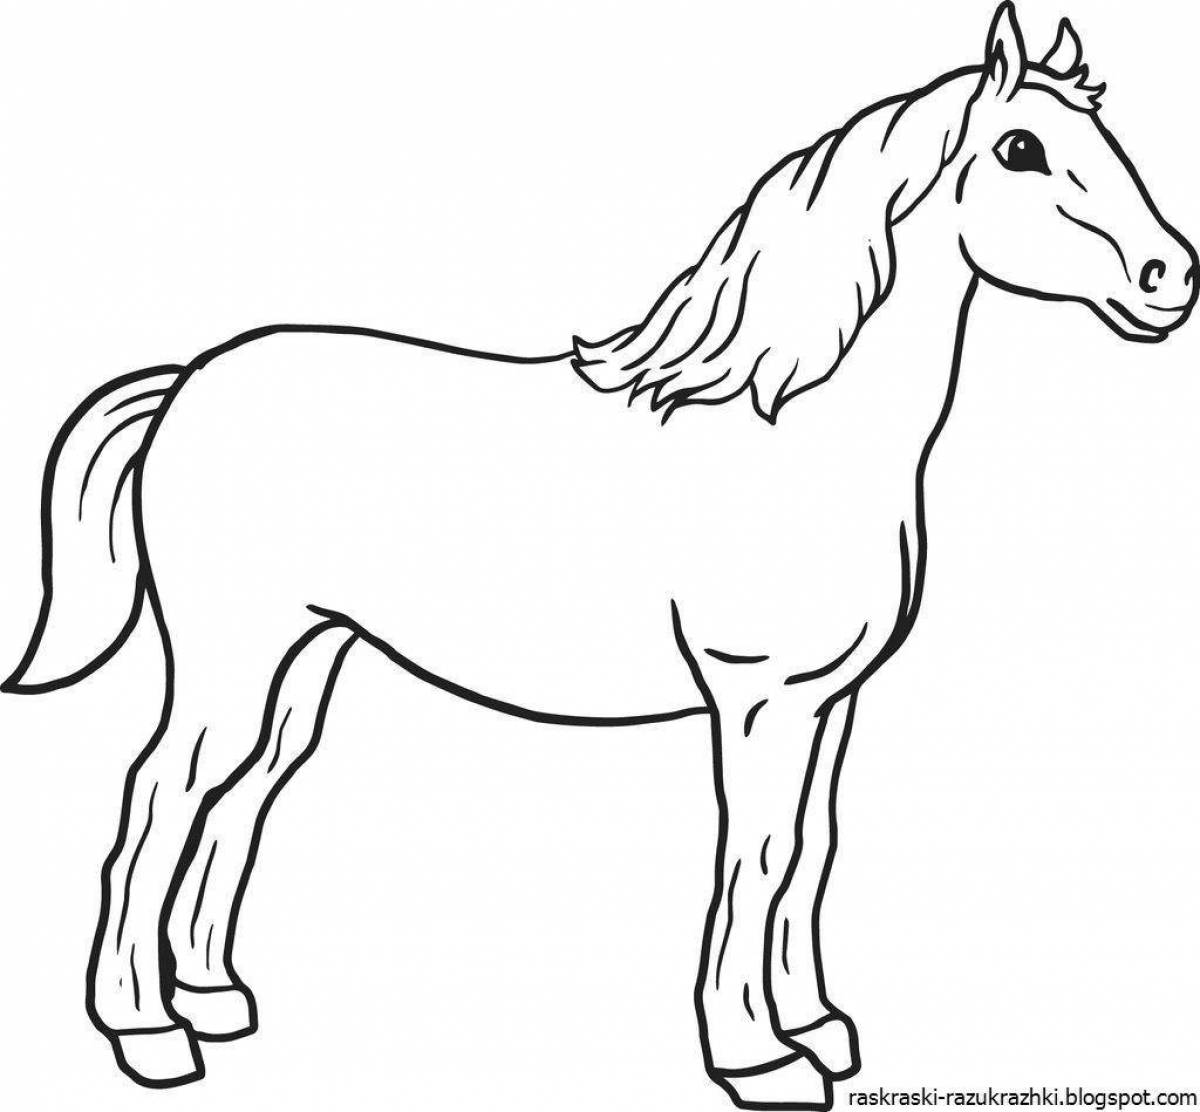 Экзотическая раскраска лошадь для детей 4-5 лет